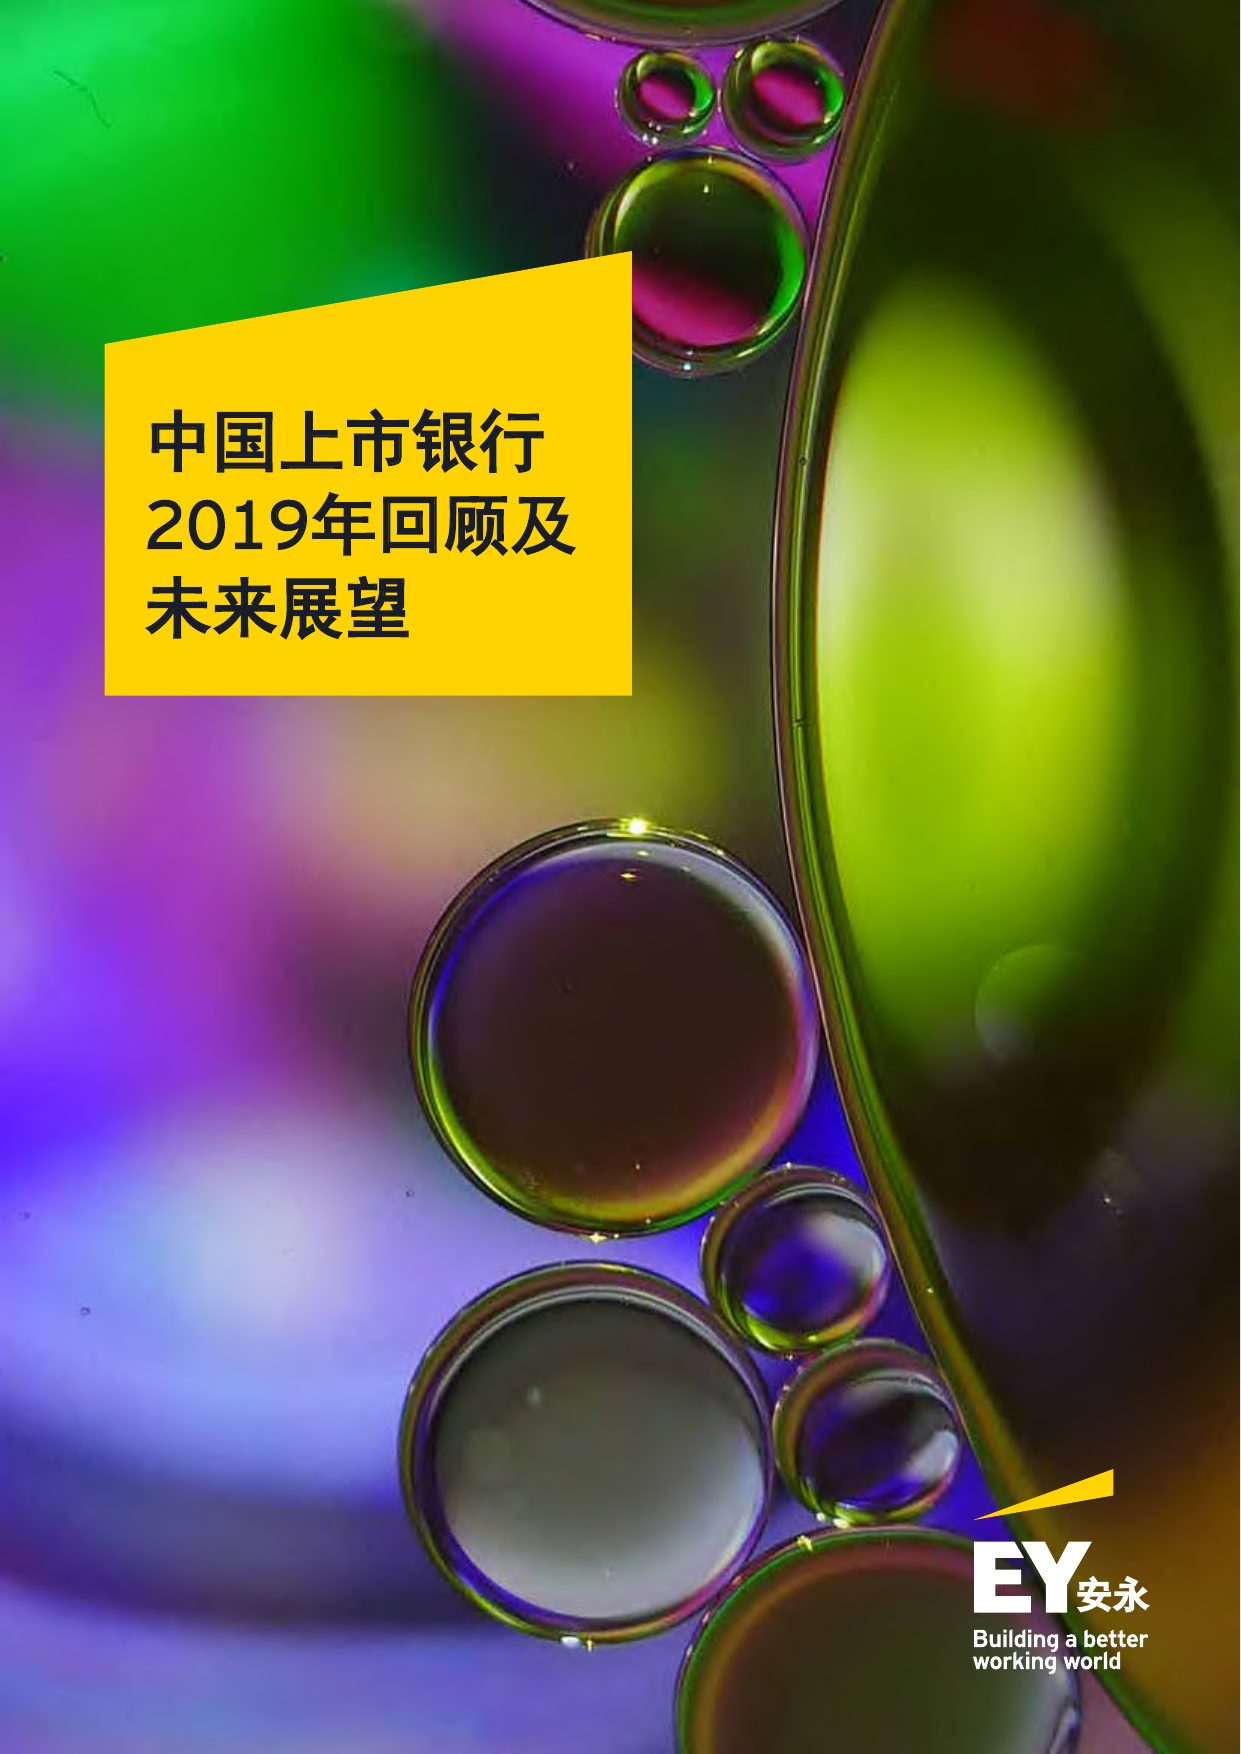 安永-中国上市银行2019年回顾及未来展望-2020.5.20-72页